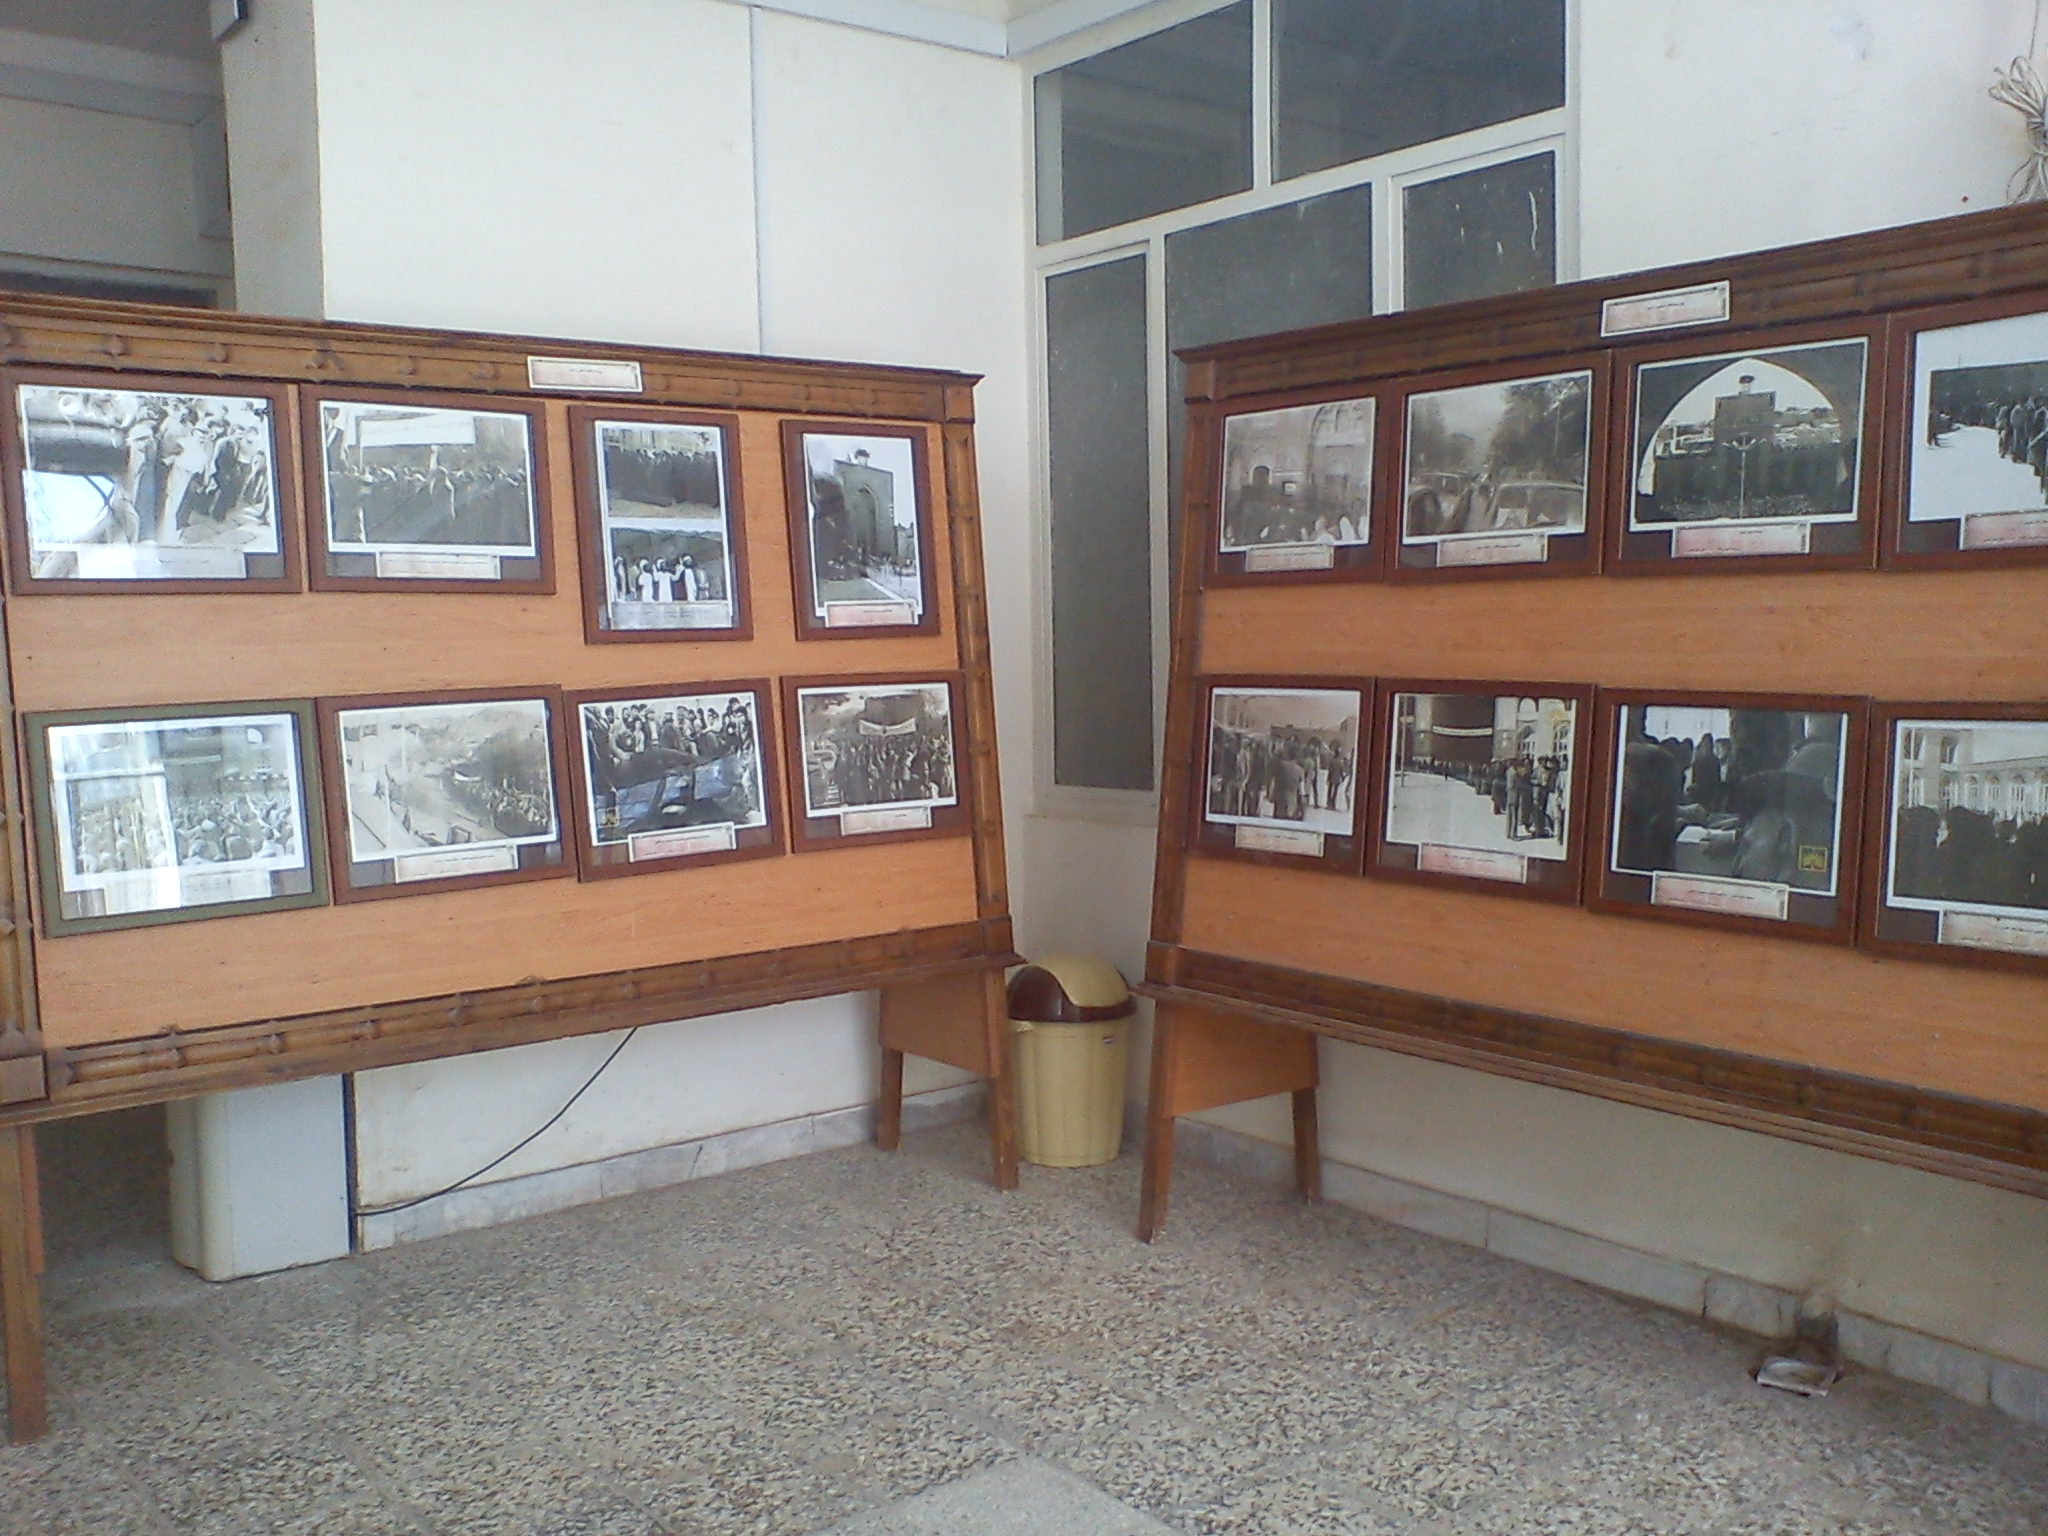 نمایشگاه عکس در خصوص حضور مردم کرمان در همه پرسی 12 فروردین 1357 توسط مدیریت کرمان